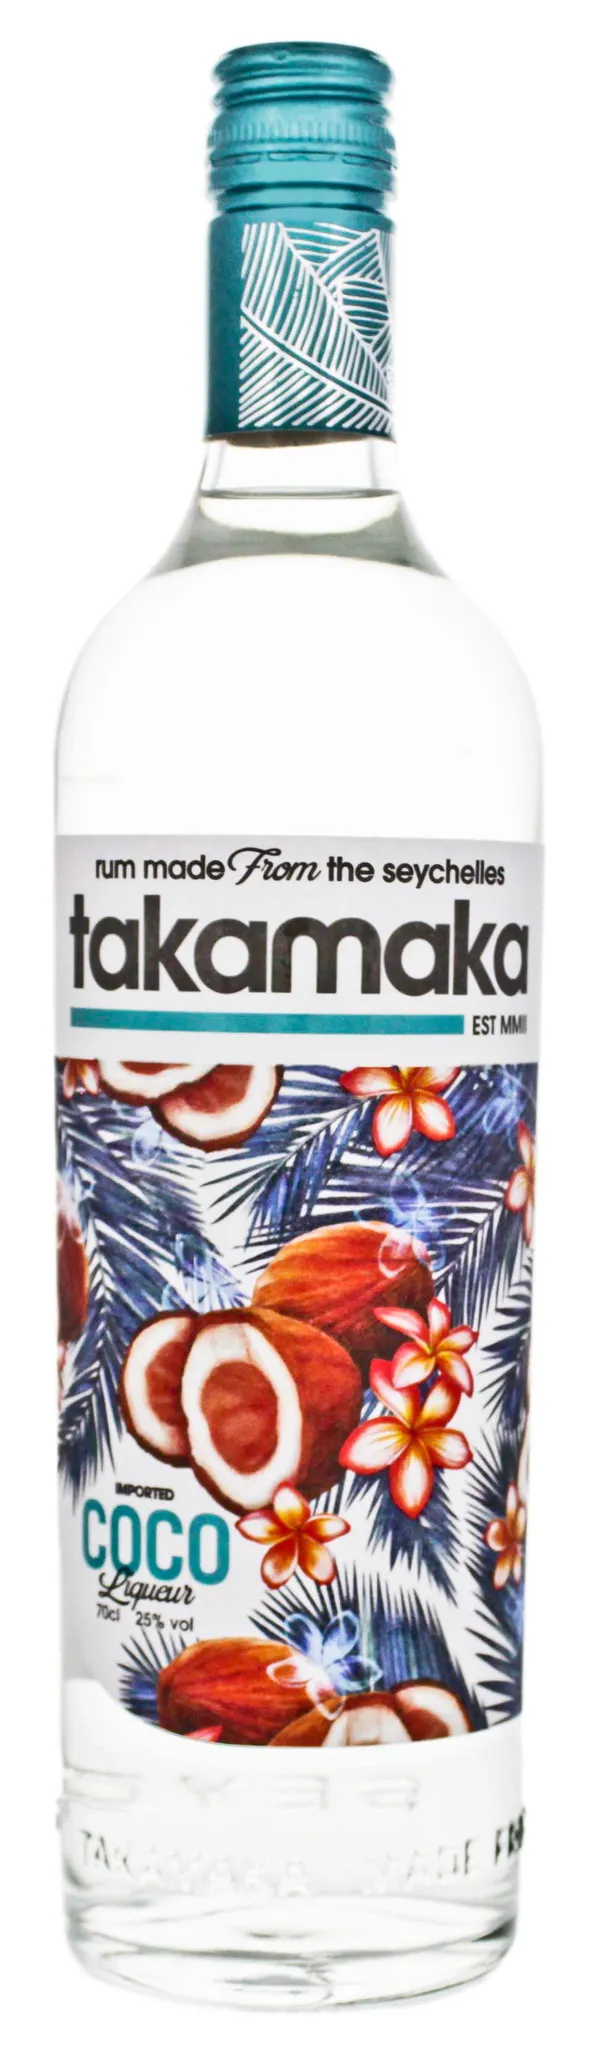 Takamaka Cocos 25 Vol.-%, alc. Likör 0,7l